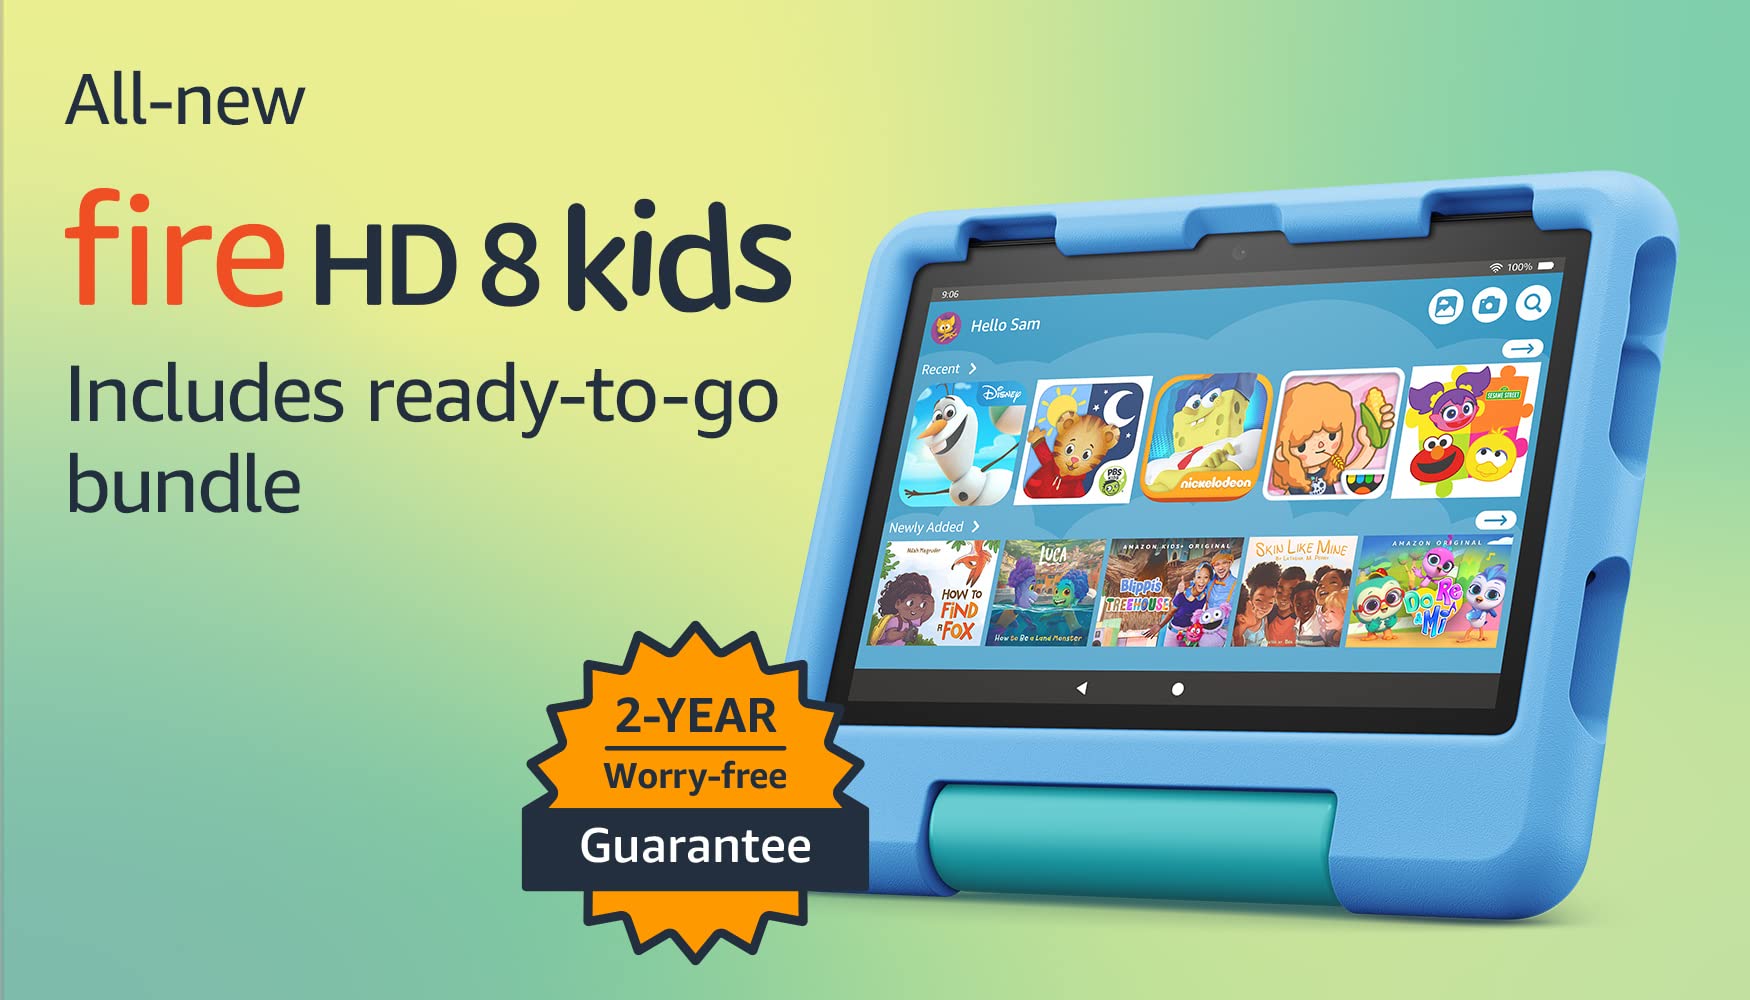 Amazon Fire HD 8 Kids tablet, 8